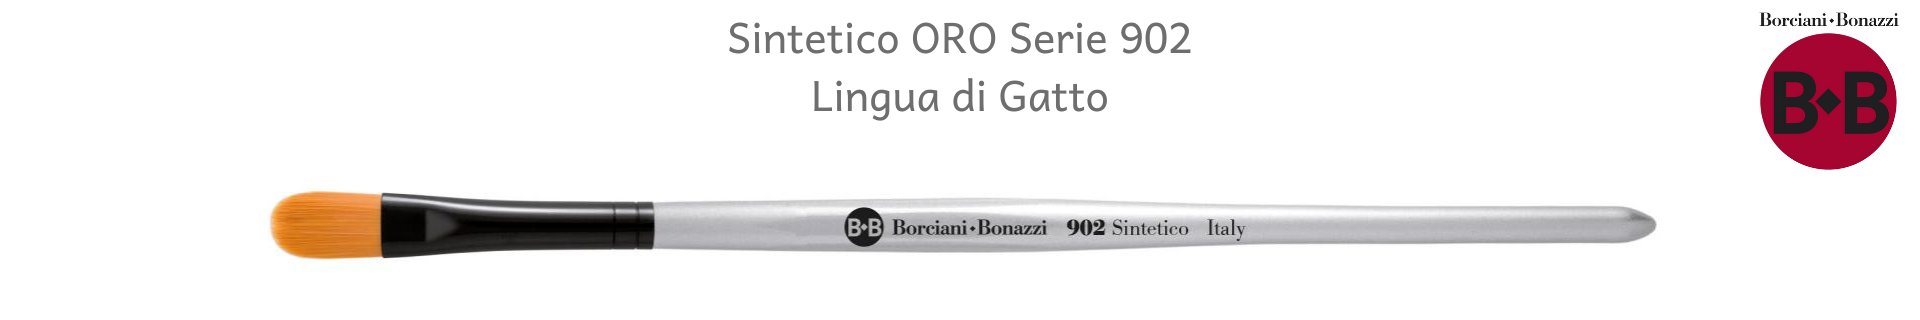 Borciani e Bonazzi ORO Serie 902 Lingua di Gatto